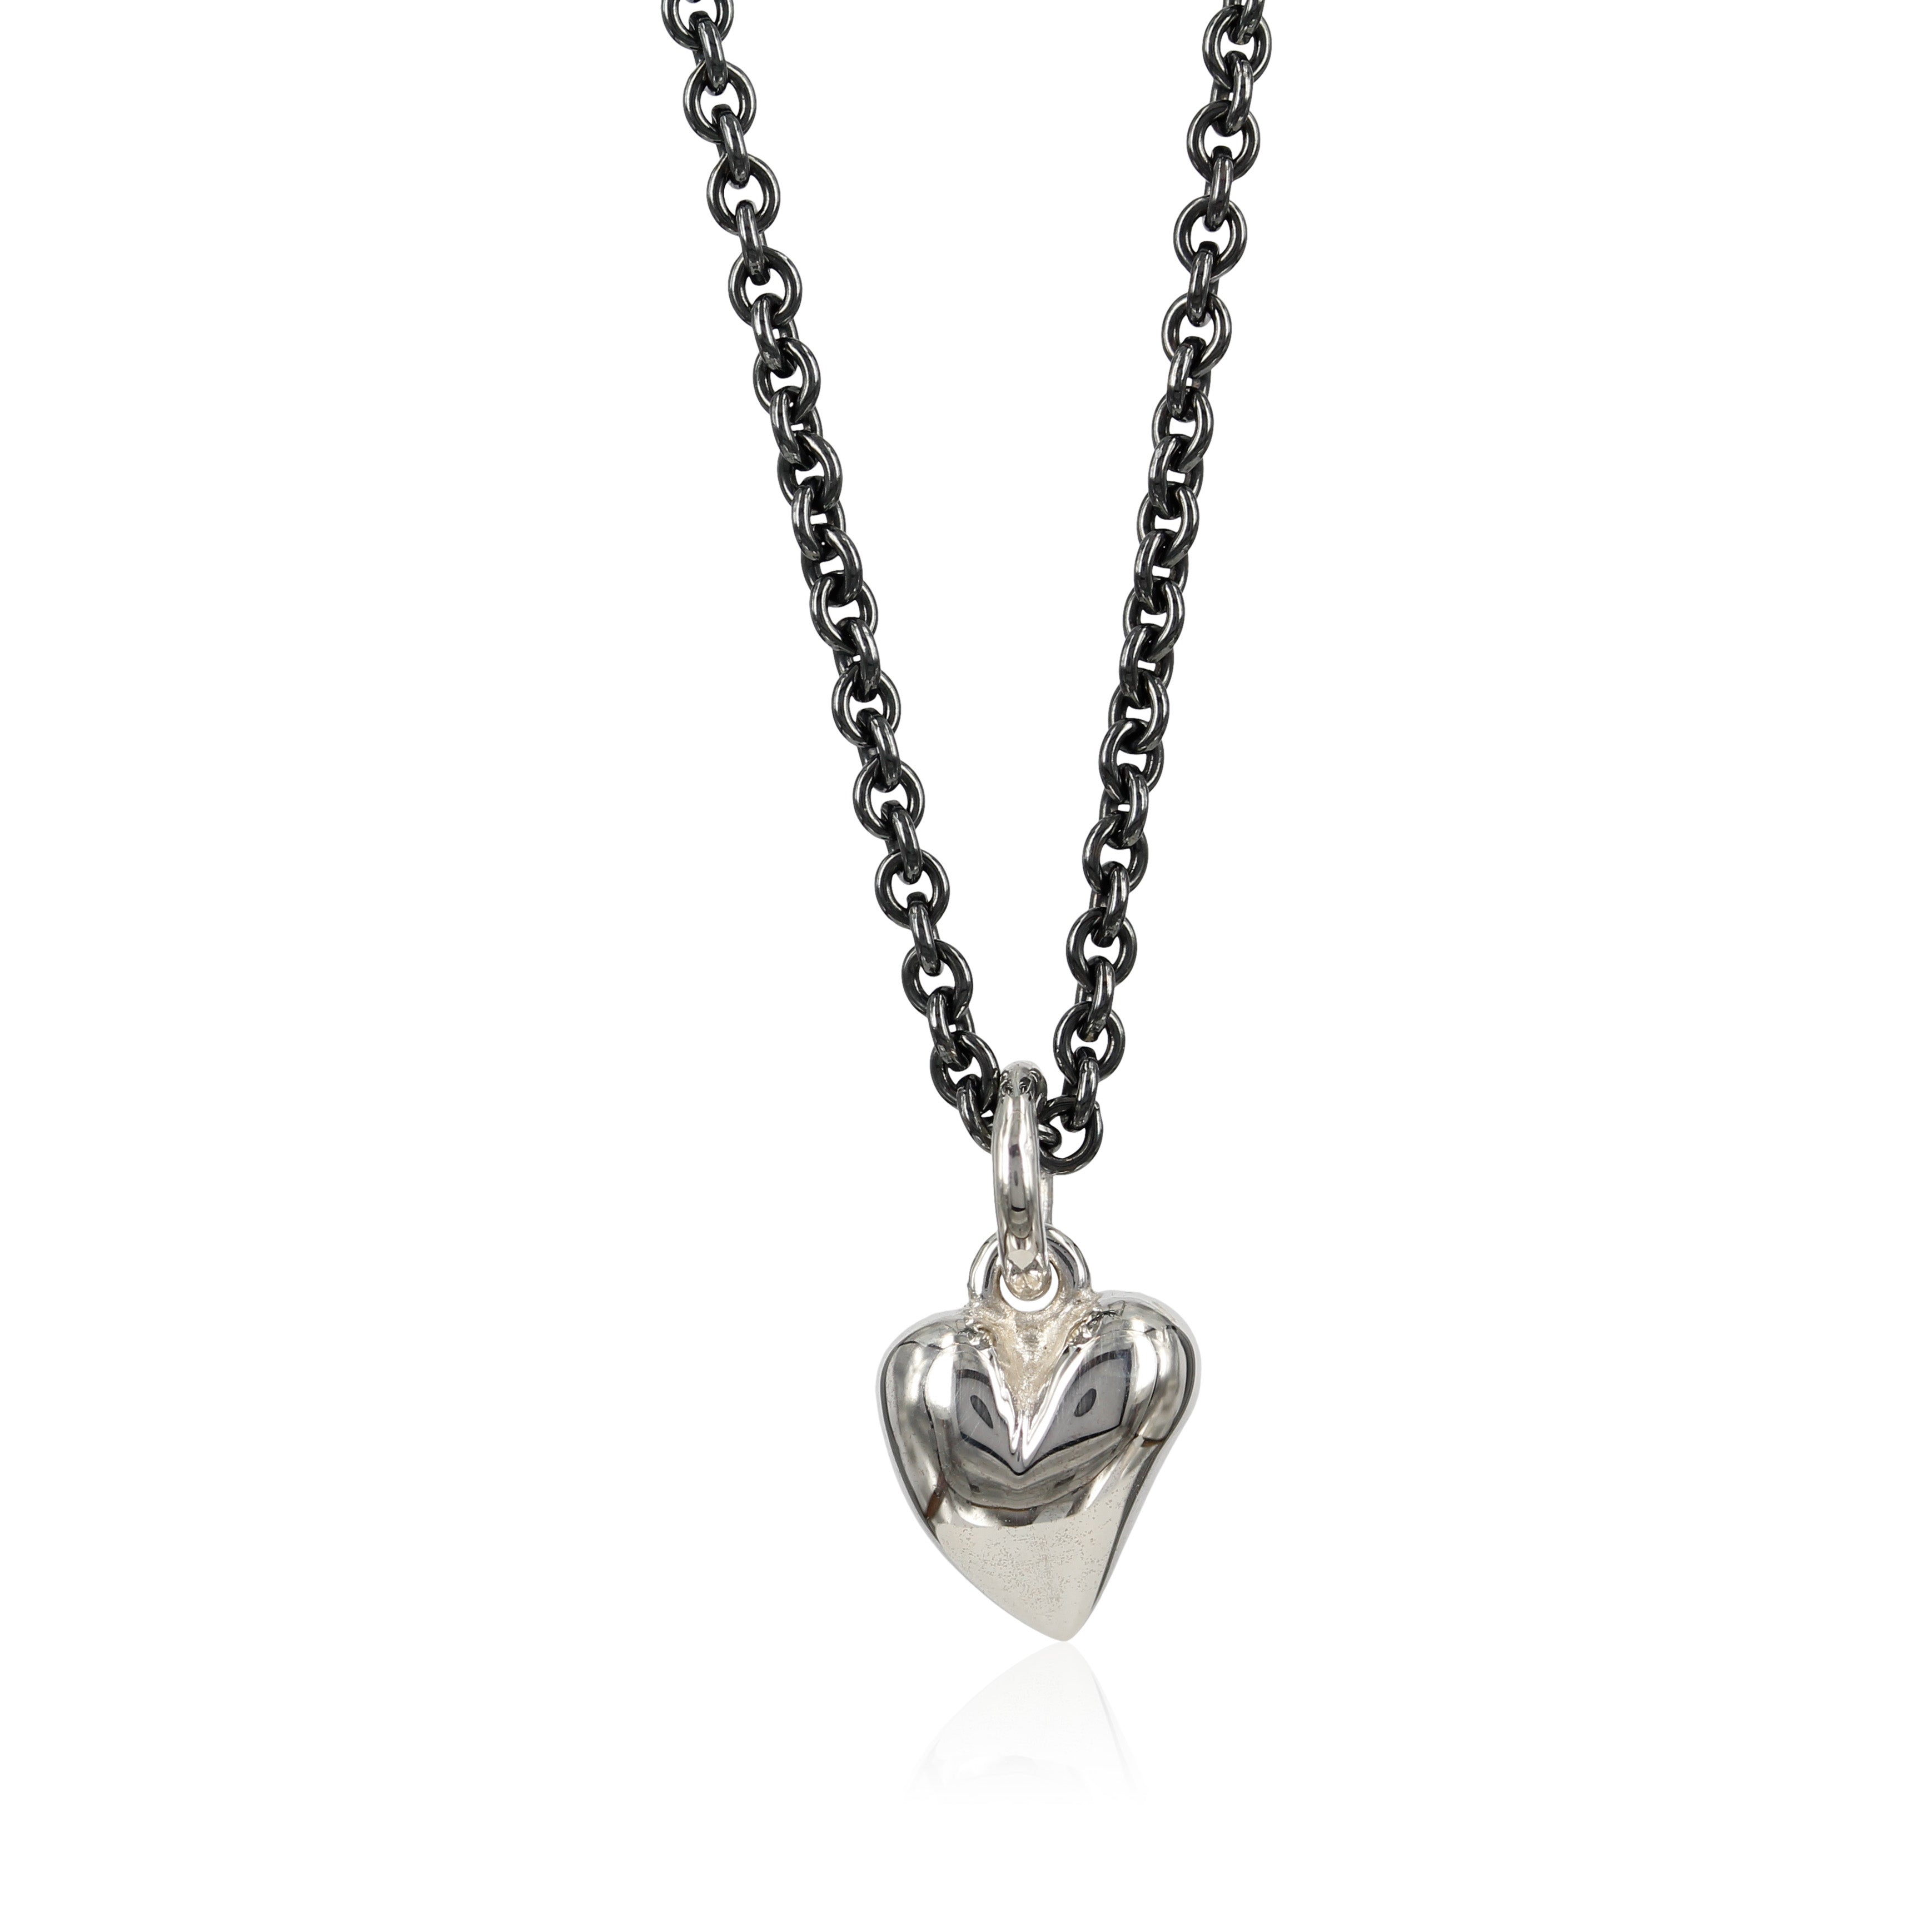 4, Lille fint sølv hjerte, designet med skæve buer i massiv sølv. Vedhænget er fint i en enkel kæde om halsen, eller som charm i et armbånd.  Et symbol på ægte kærlighed.  Kærlighed har ingen grænser, ingen krav, kærlighed er dyb respekt og hengivenhed.